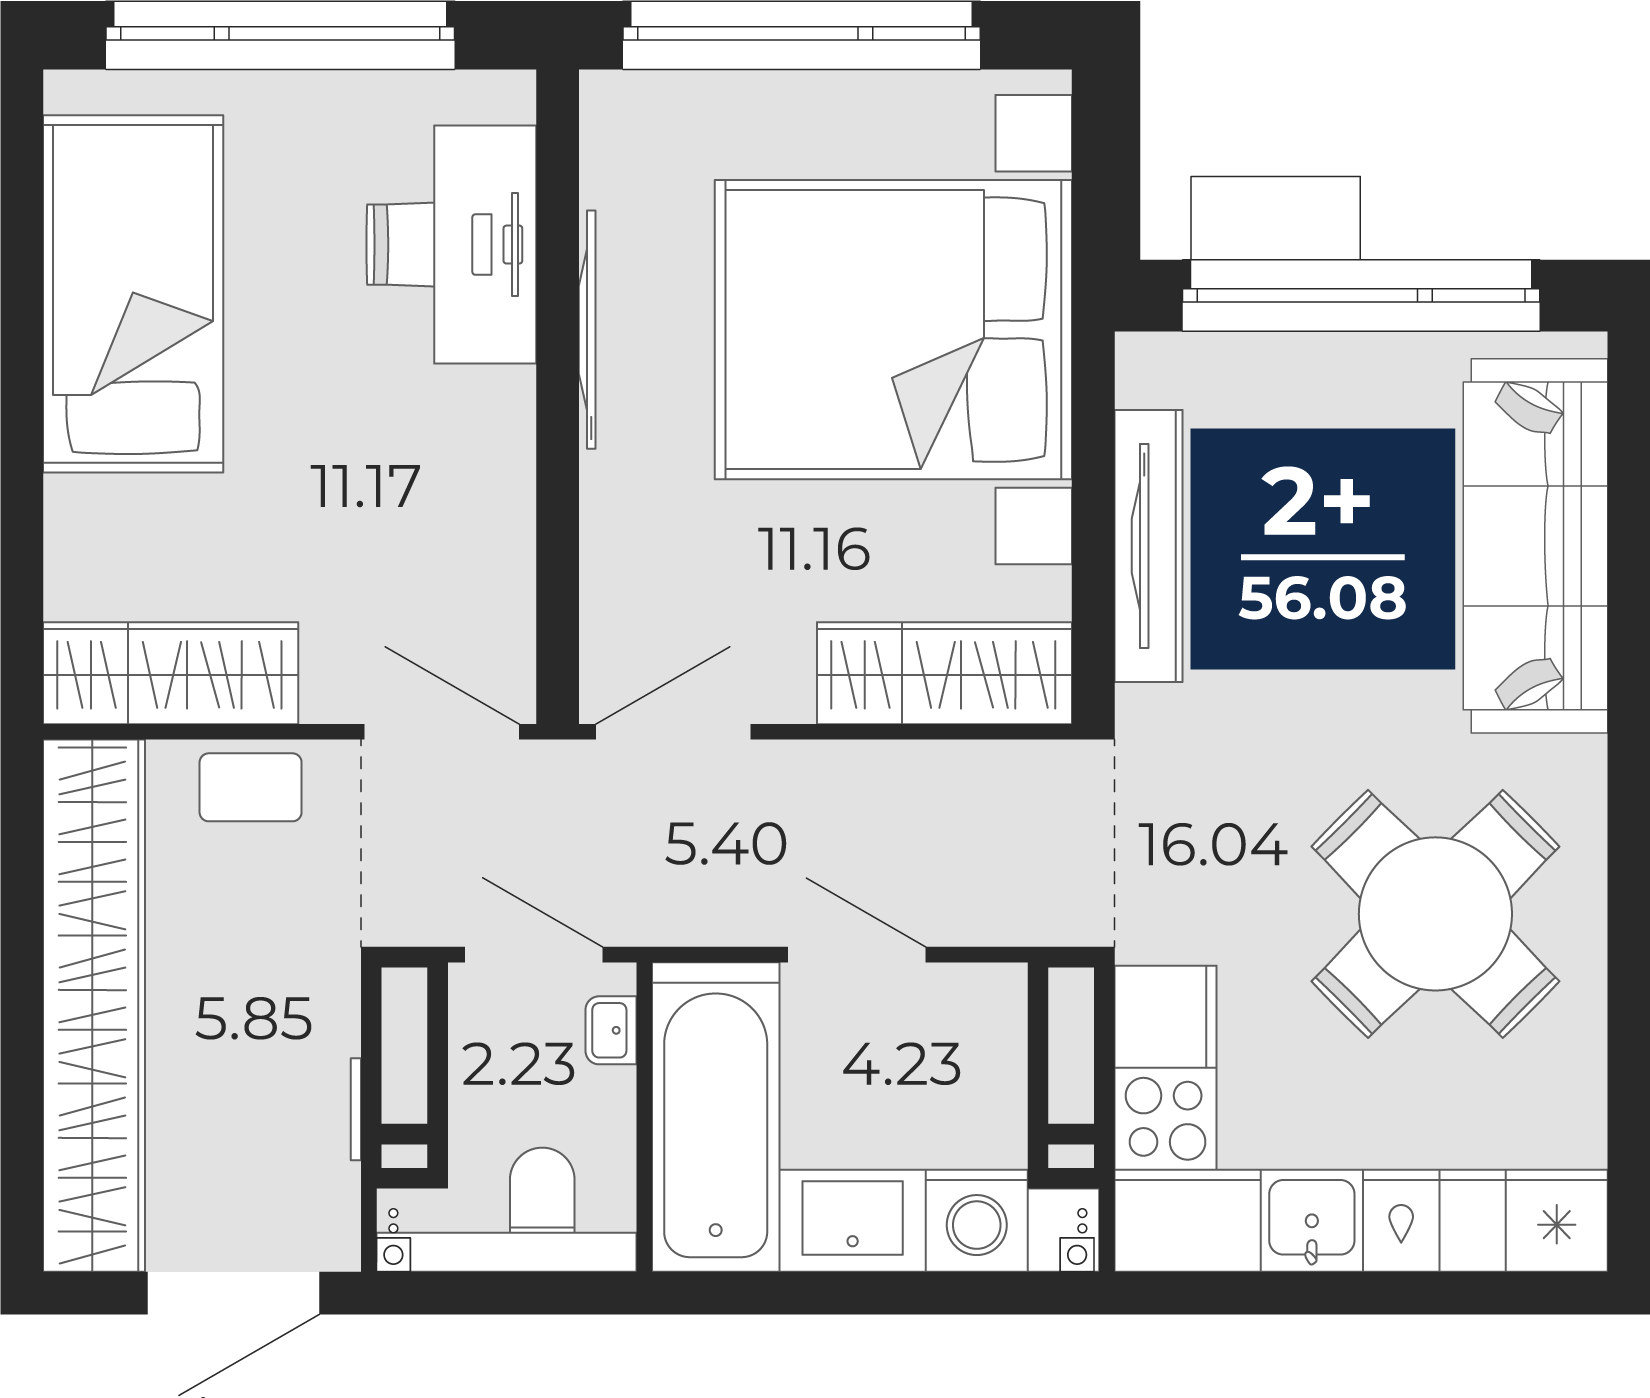 Квартира № 234, 2-комнатная, 56.08 кв. м, 13 этаж